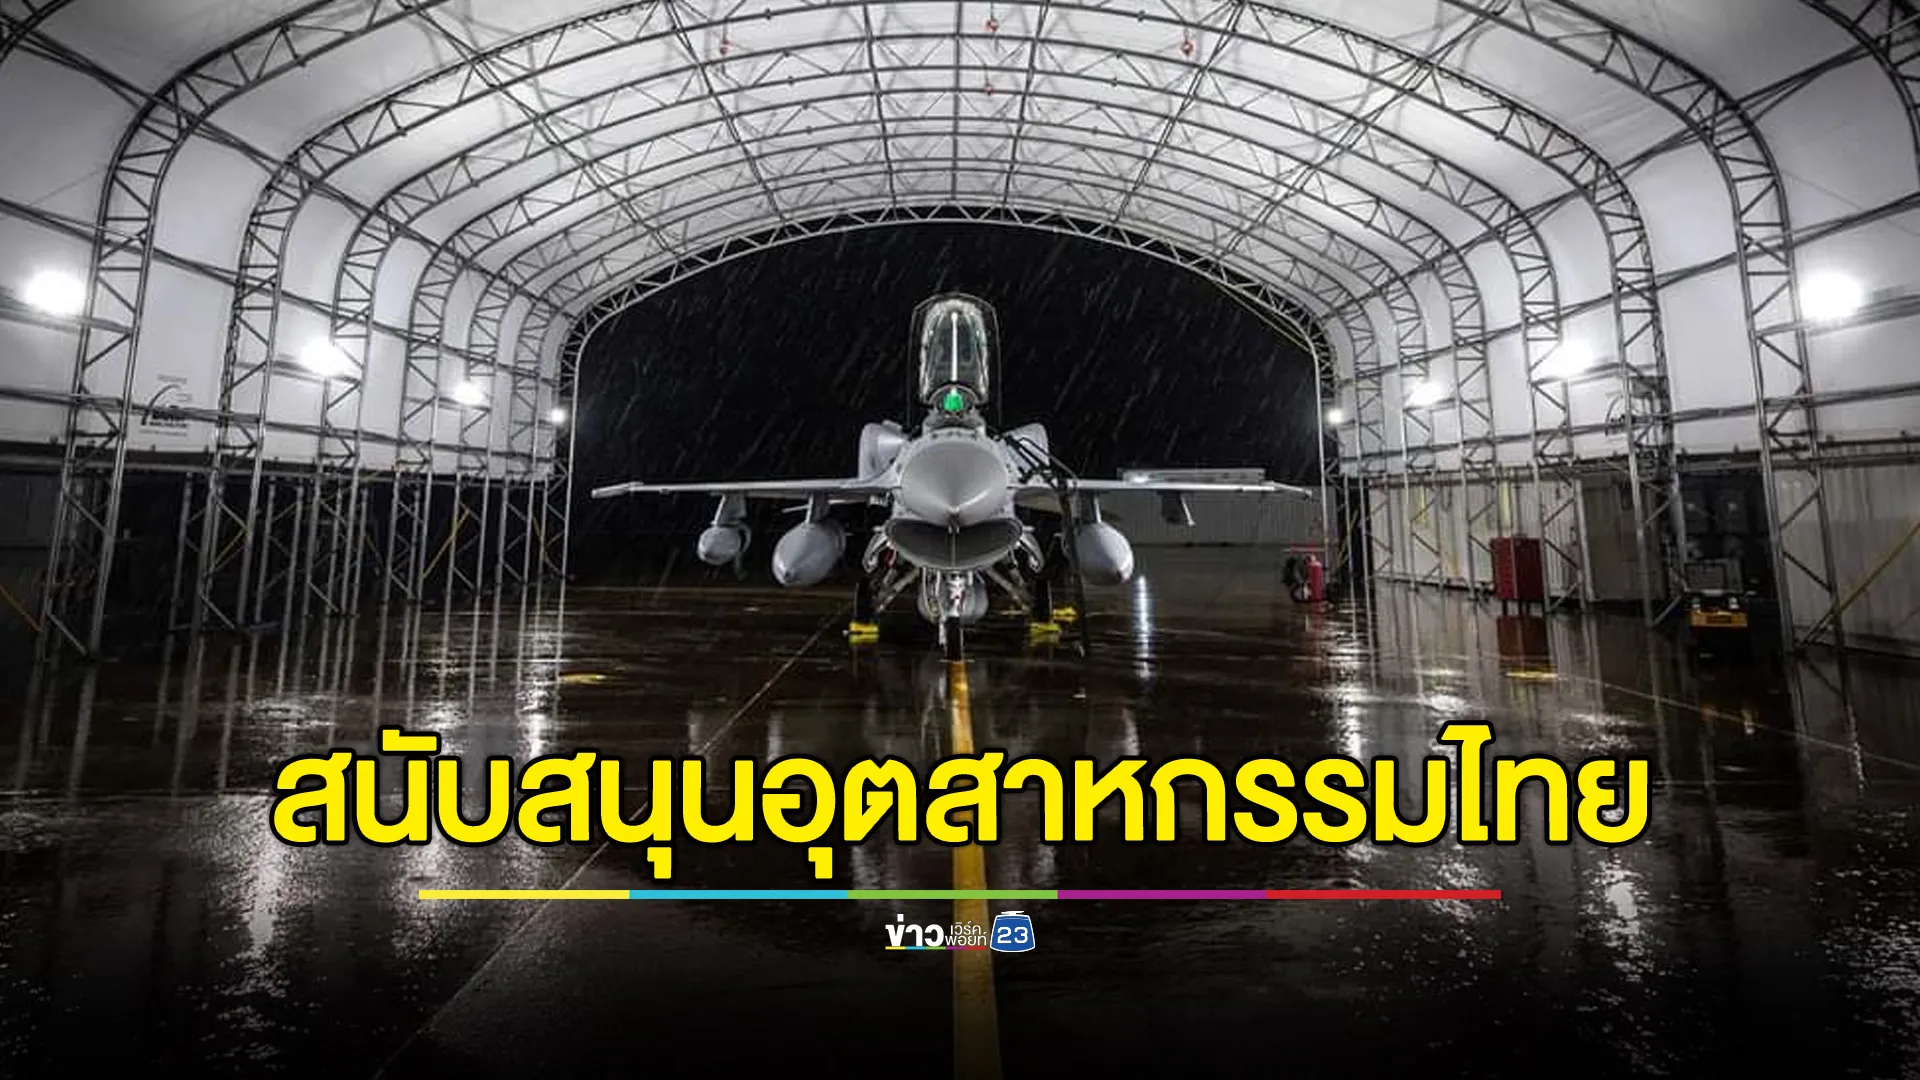 ผู้ผลิตเครื่องบินรบระดับโลก ร่วมสนับสนุนอุตสาหกรรมไทย